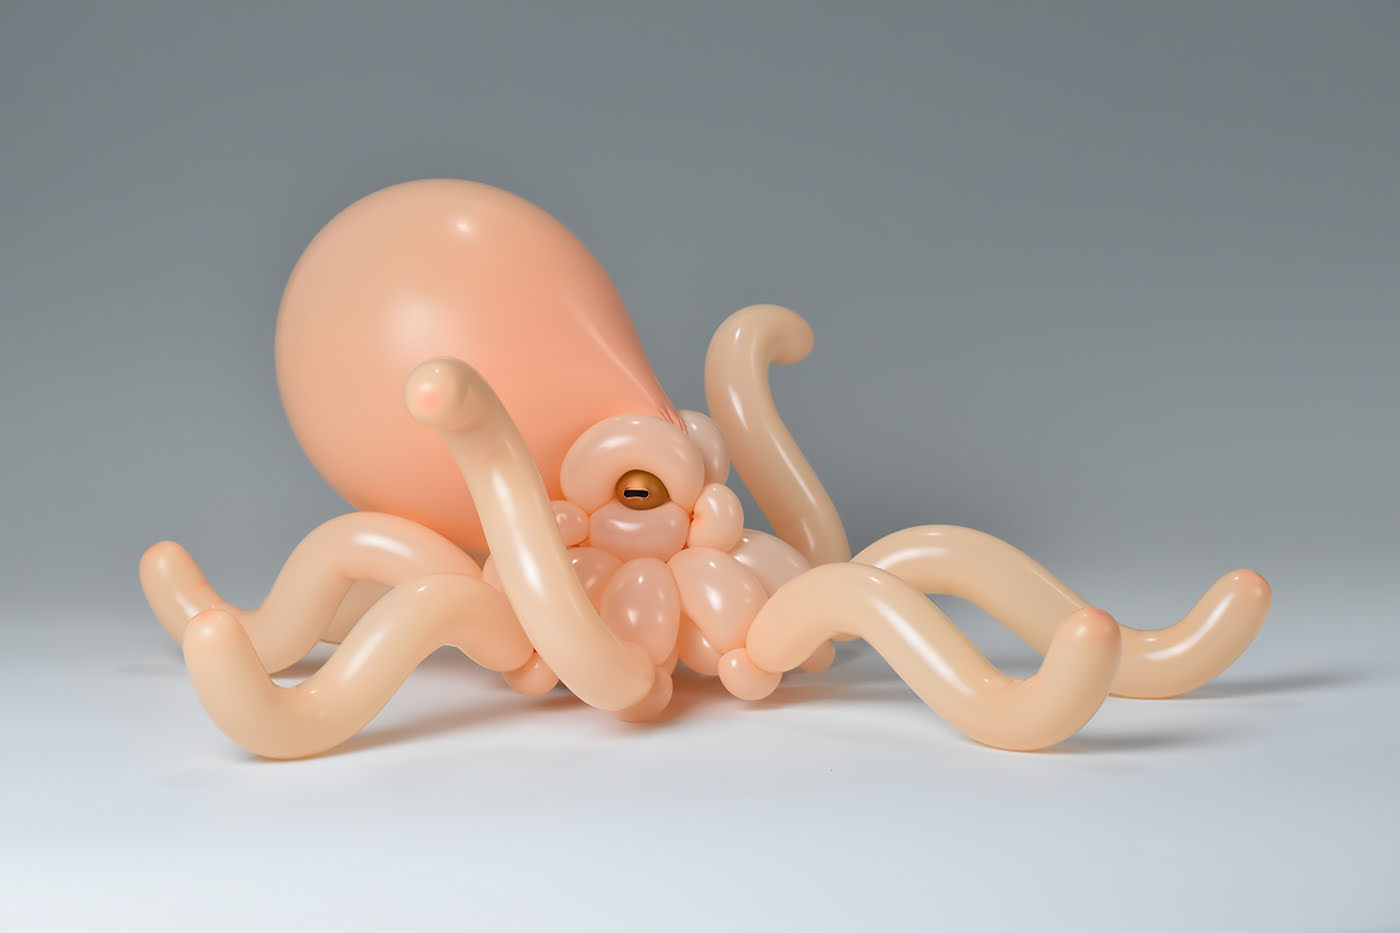 balloon sculptures octopus by masayoshi matsumoto